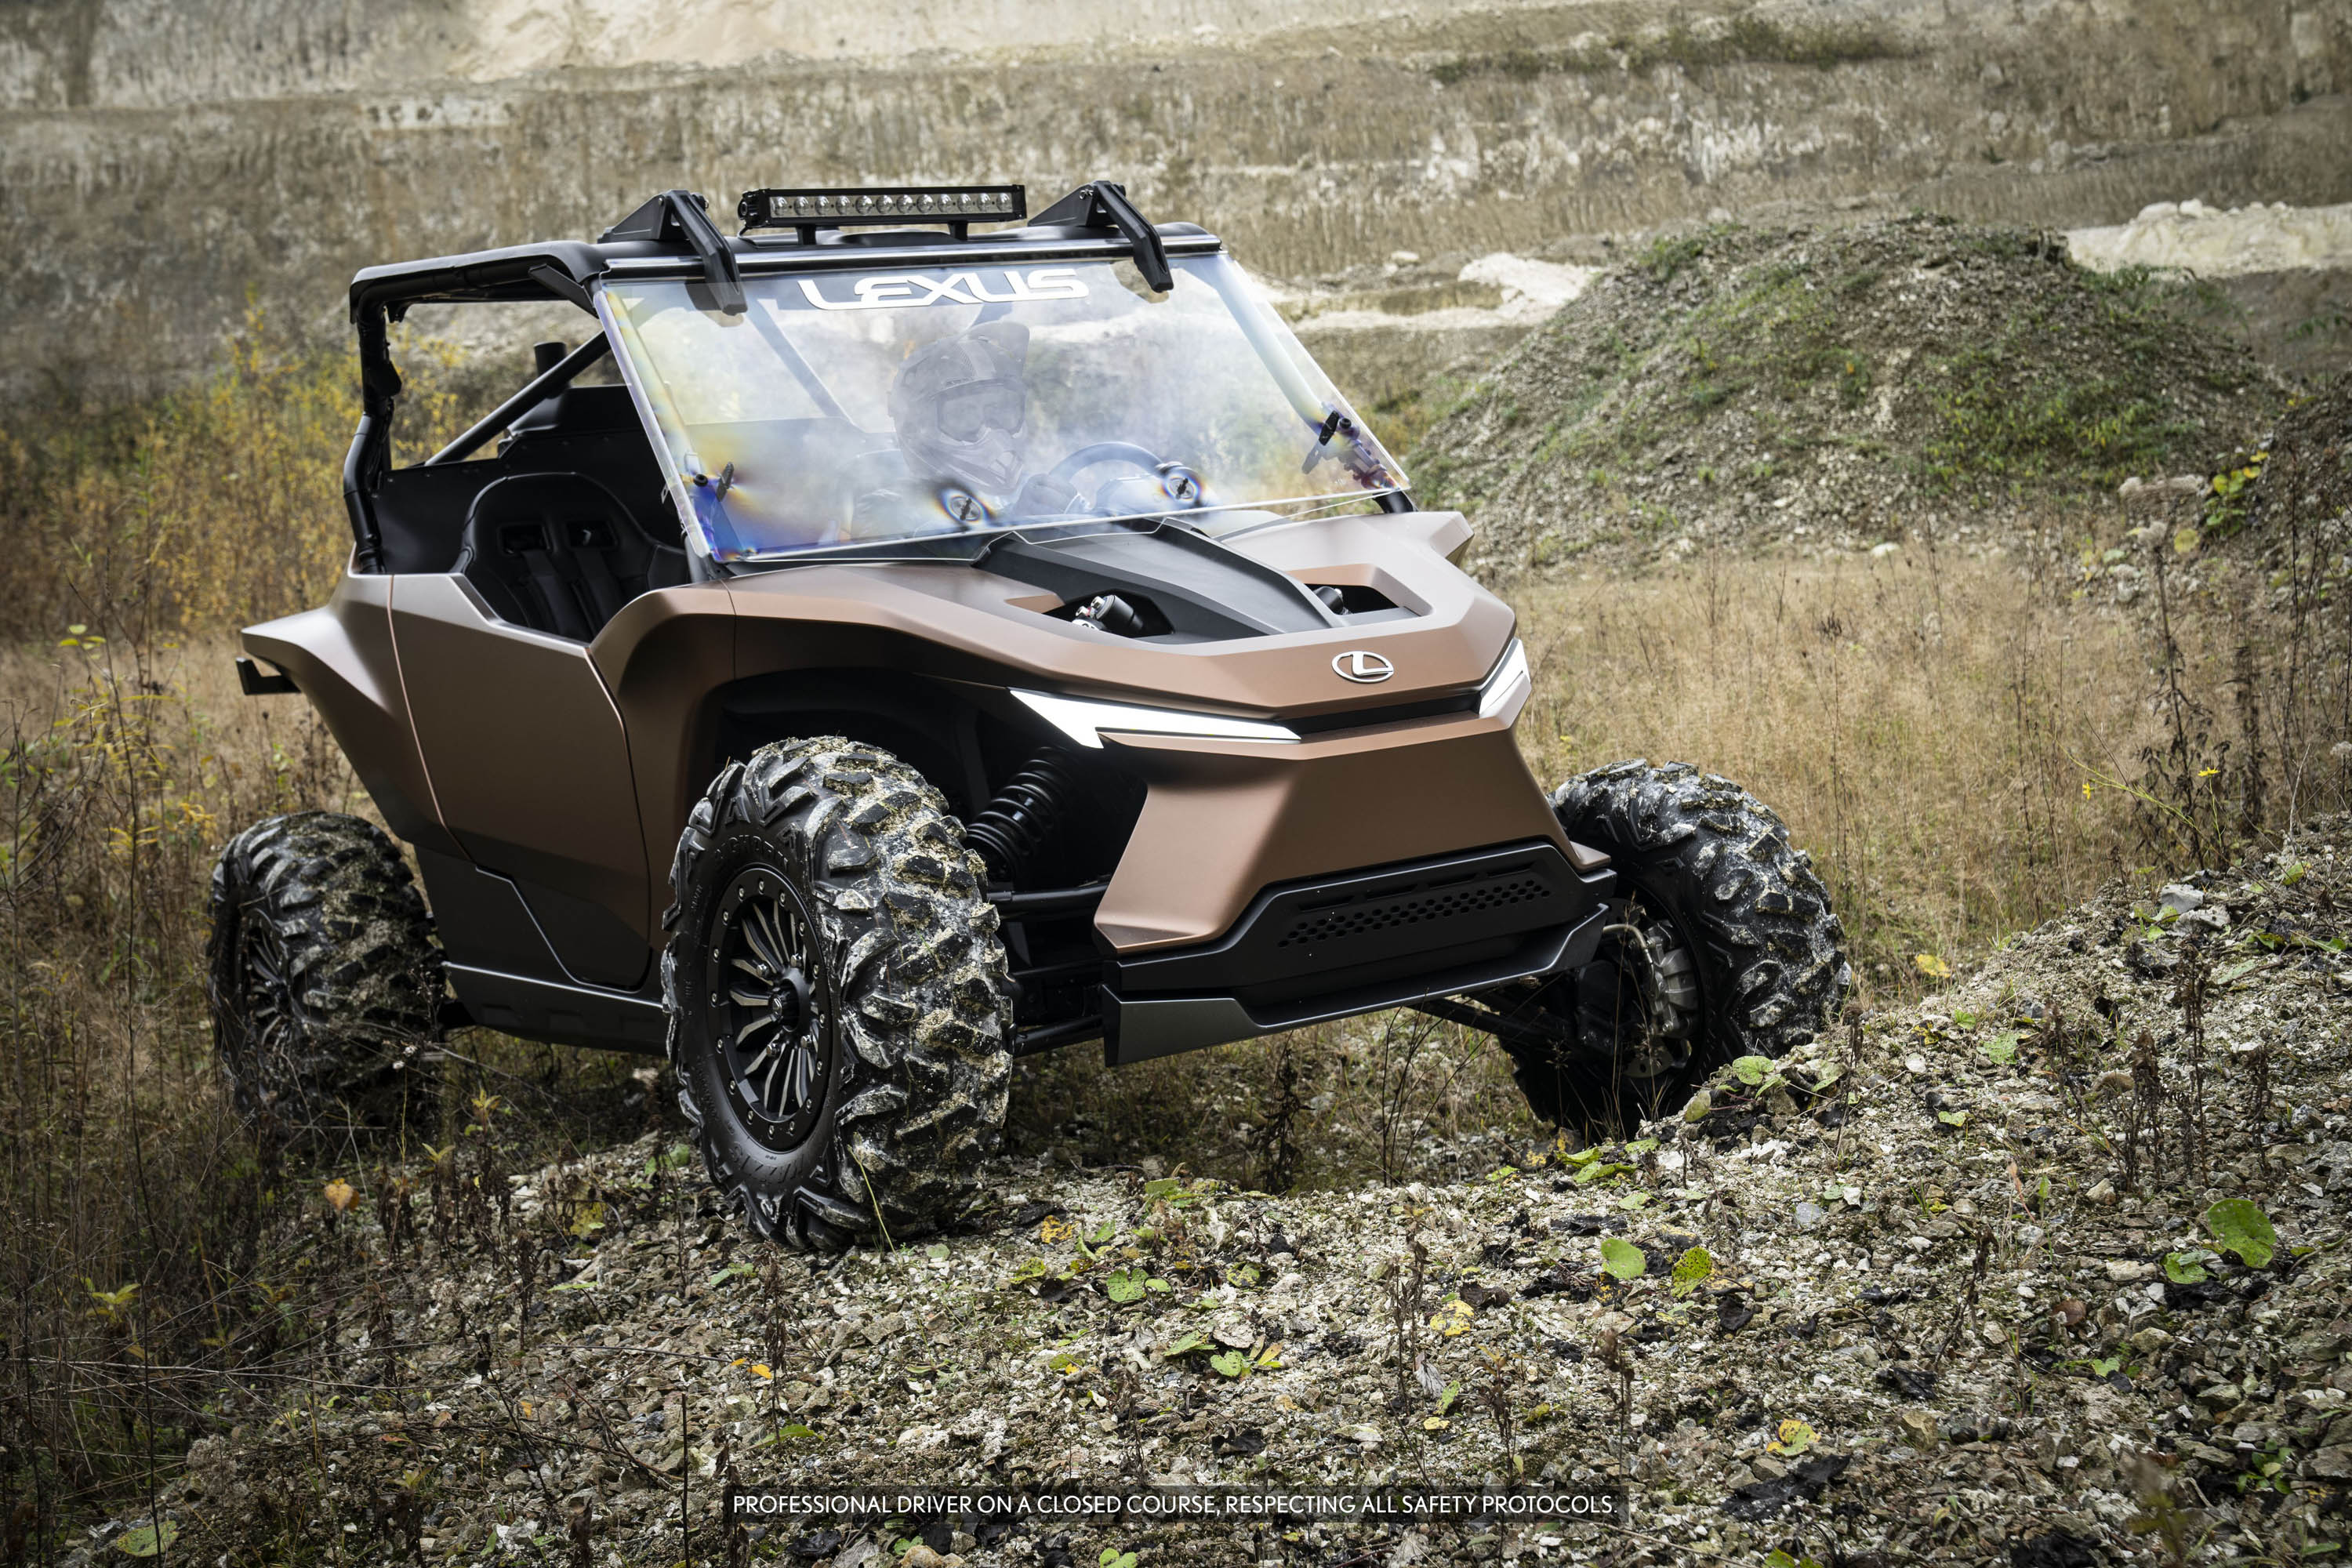 Для концепта Lexus ROV команда дизайнеров разработала автомобиль, который будет хорошо смотреться в любых природных условиях. Автомобиль имеет все отличительные черты внедорожника с открытой подвеской, защитным каркасом и массивными внедорожными шина